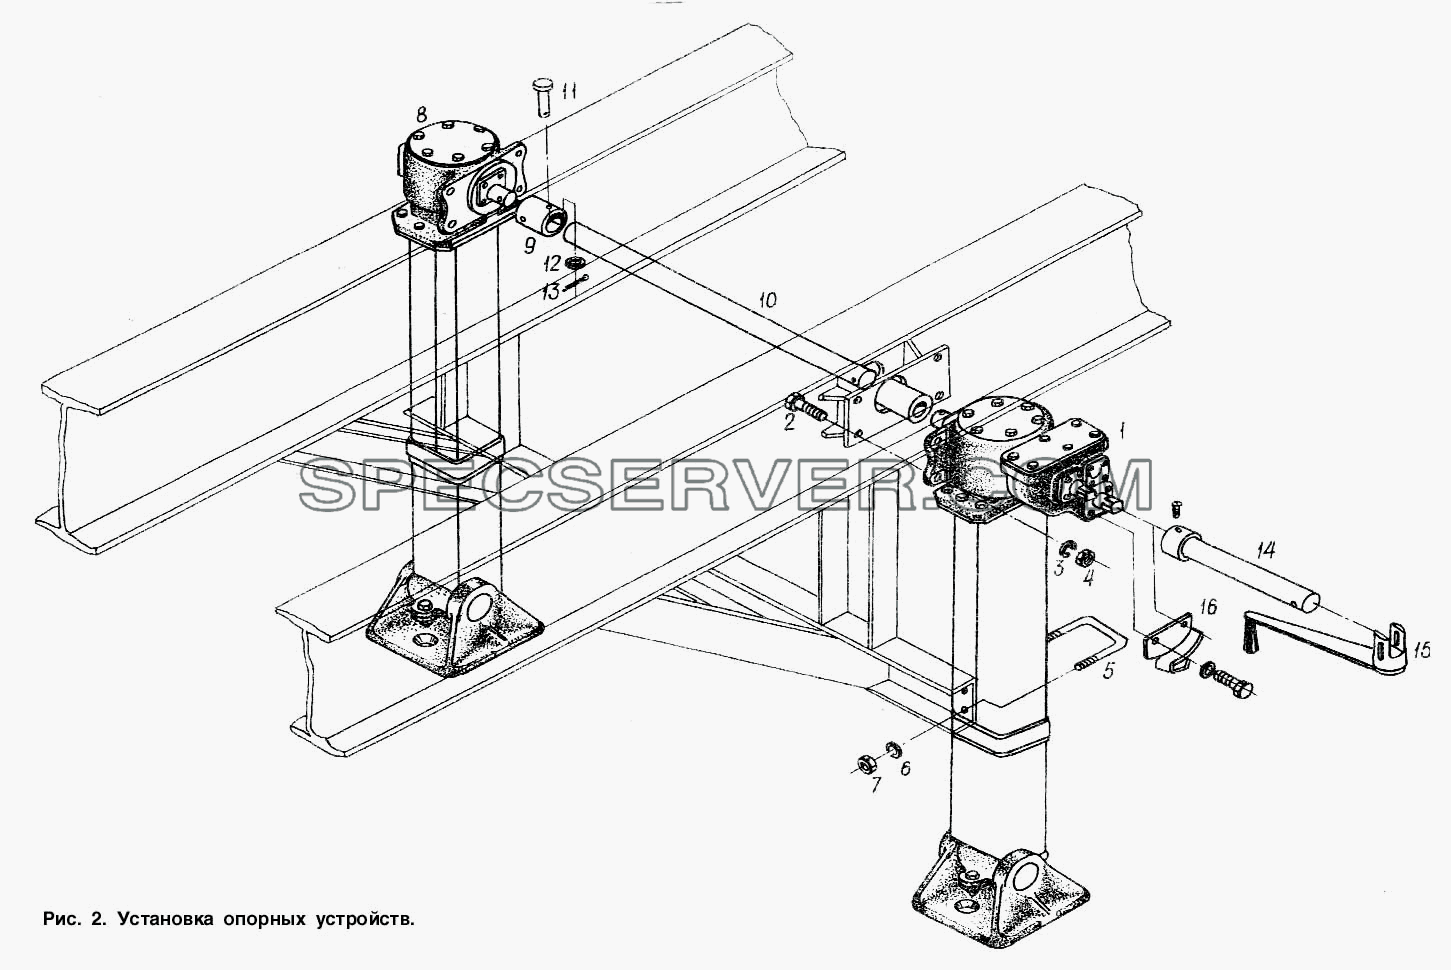 Установка опорных устройств для МАЗ-93866 (список запасных частей)